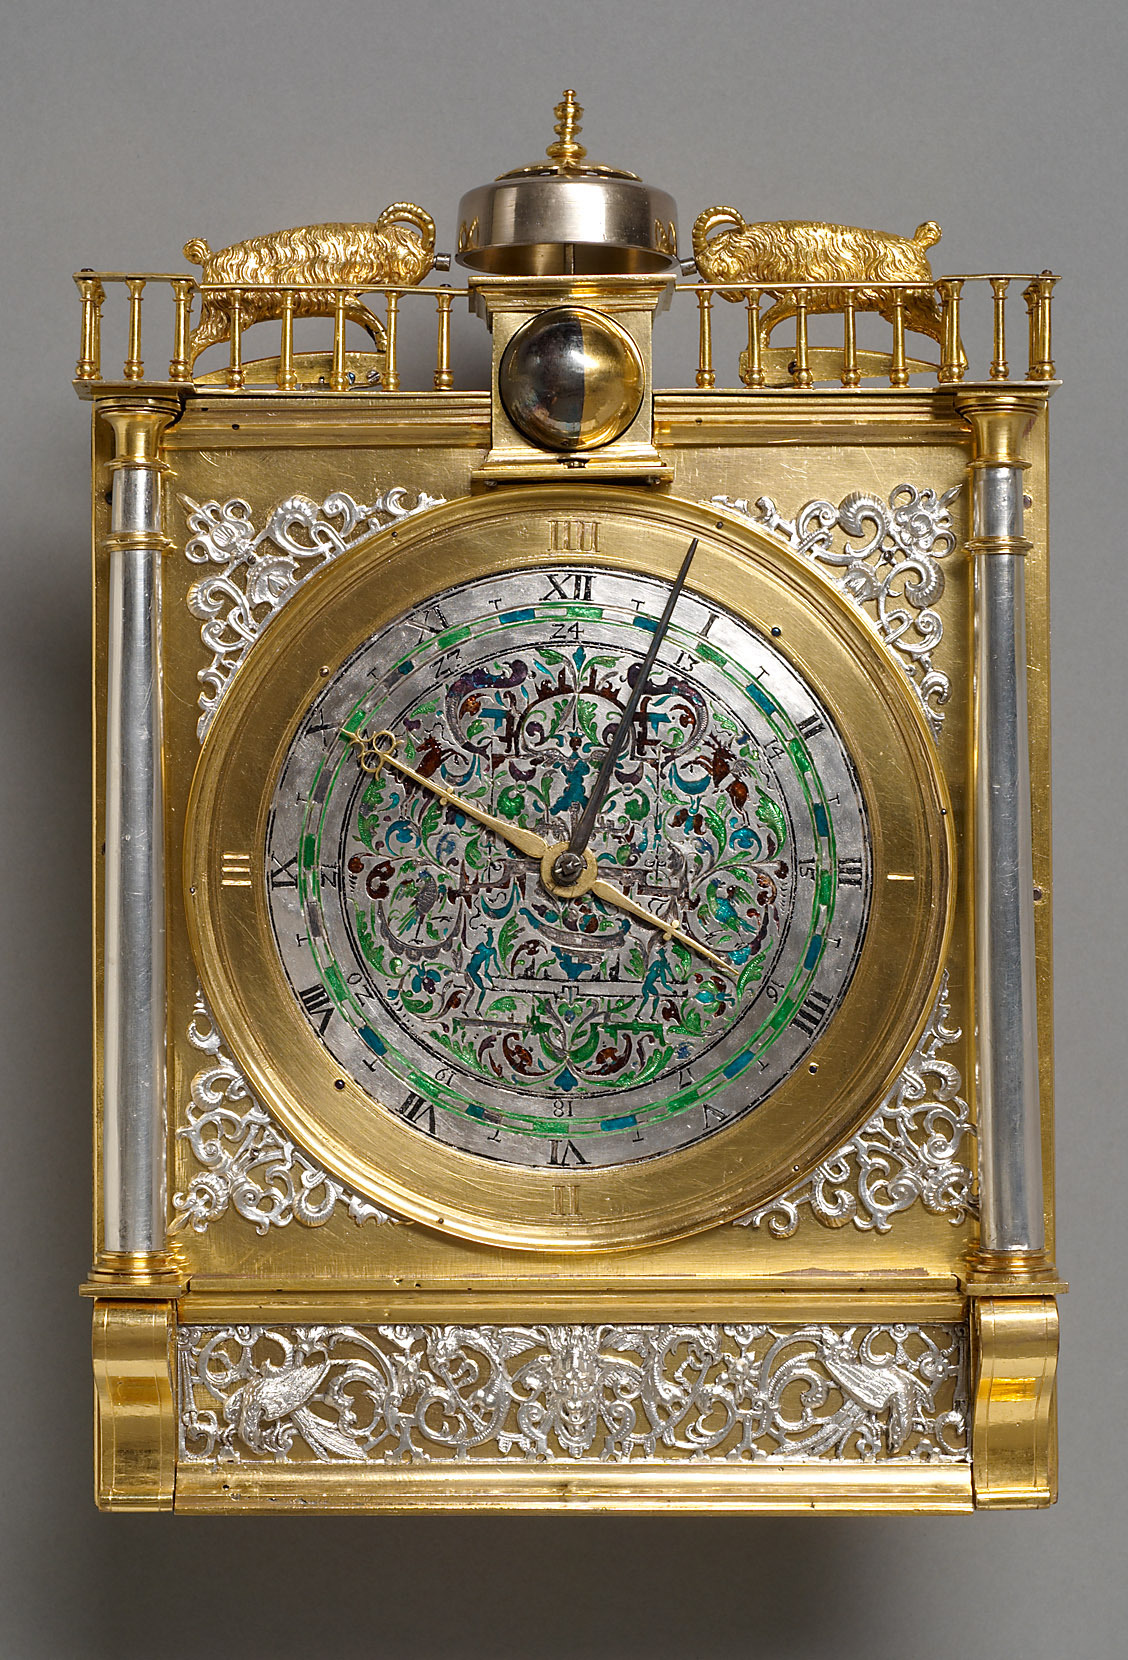 78 часы. Обложка в виртуальном музее коллекции настольных часов. Часы Mozer Mantel Clock Limited Edition. Ра78 часы.